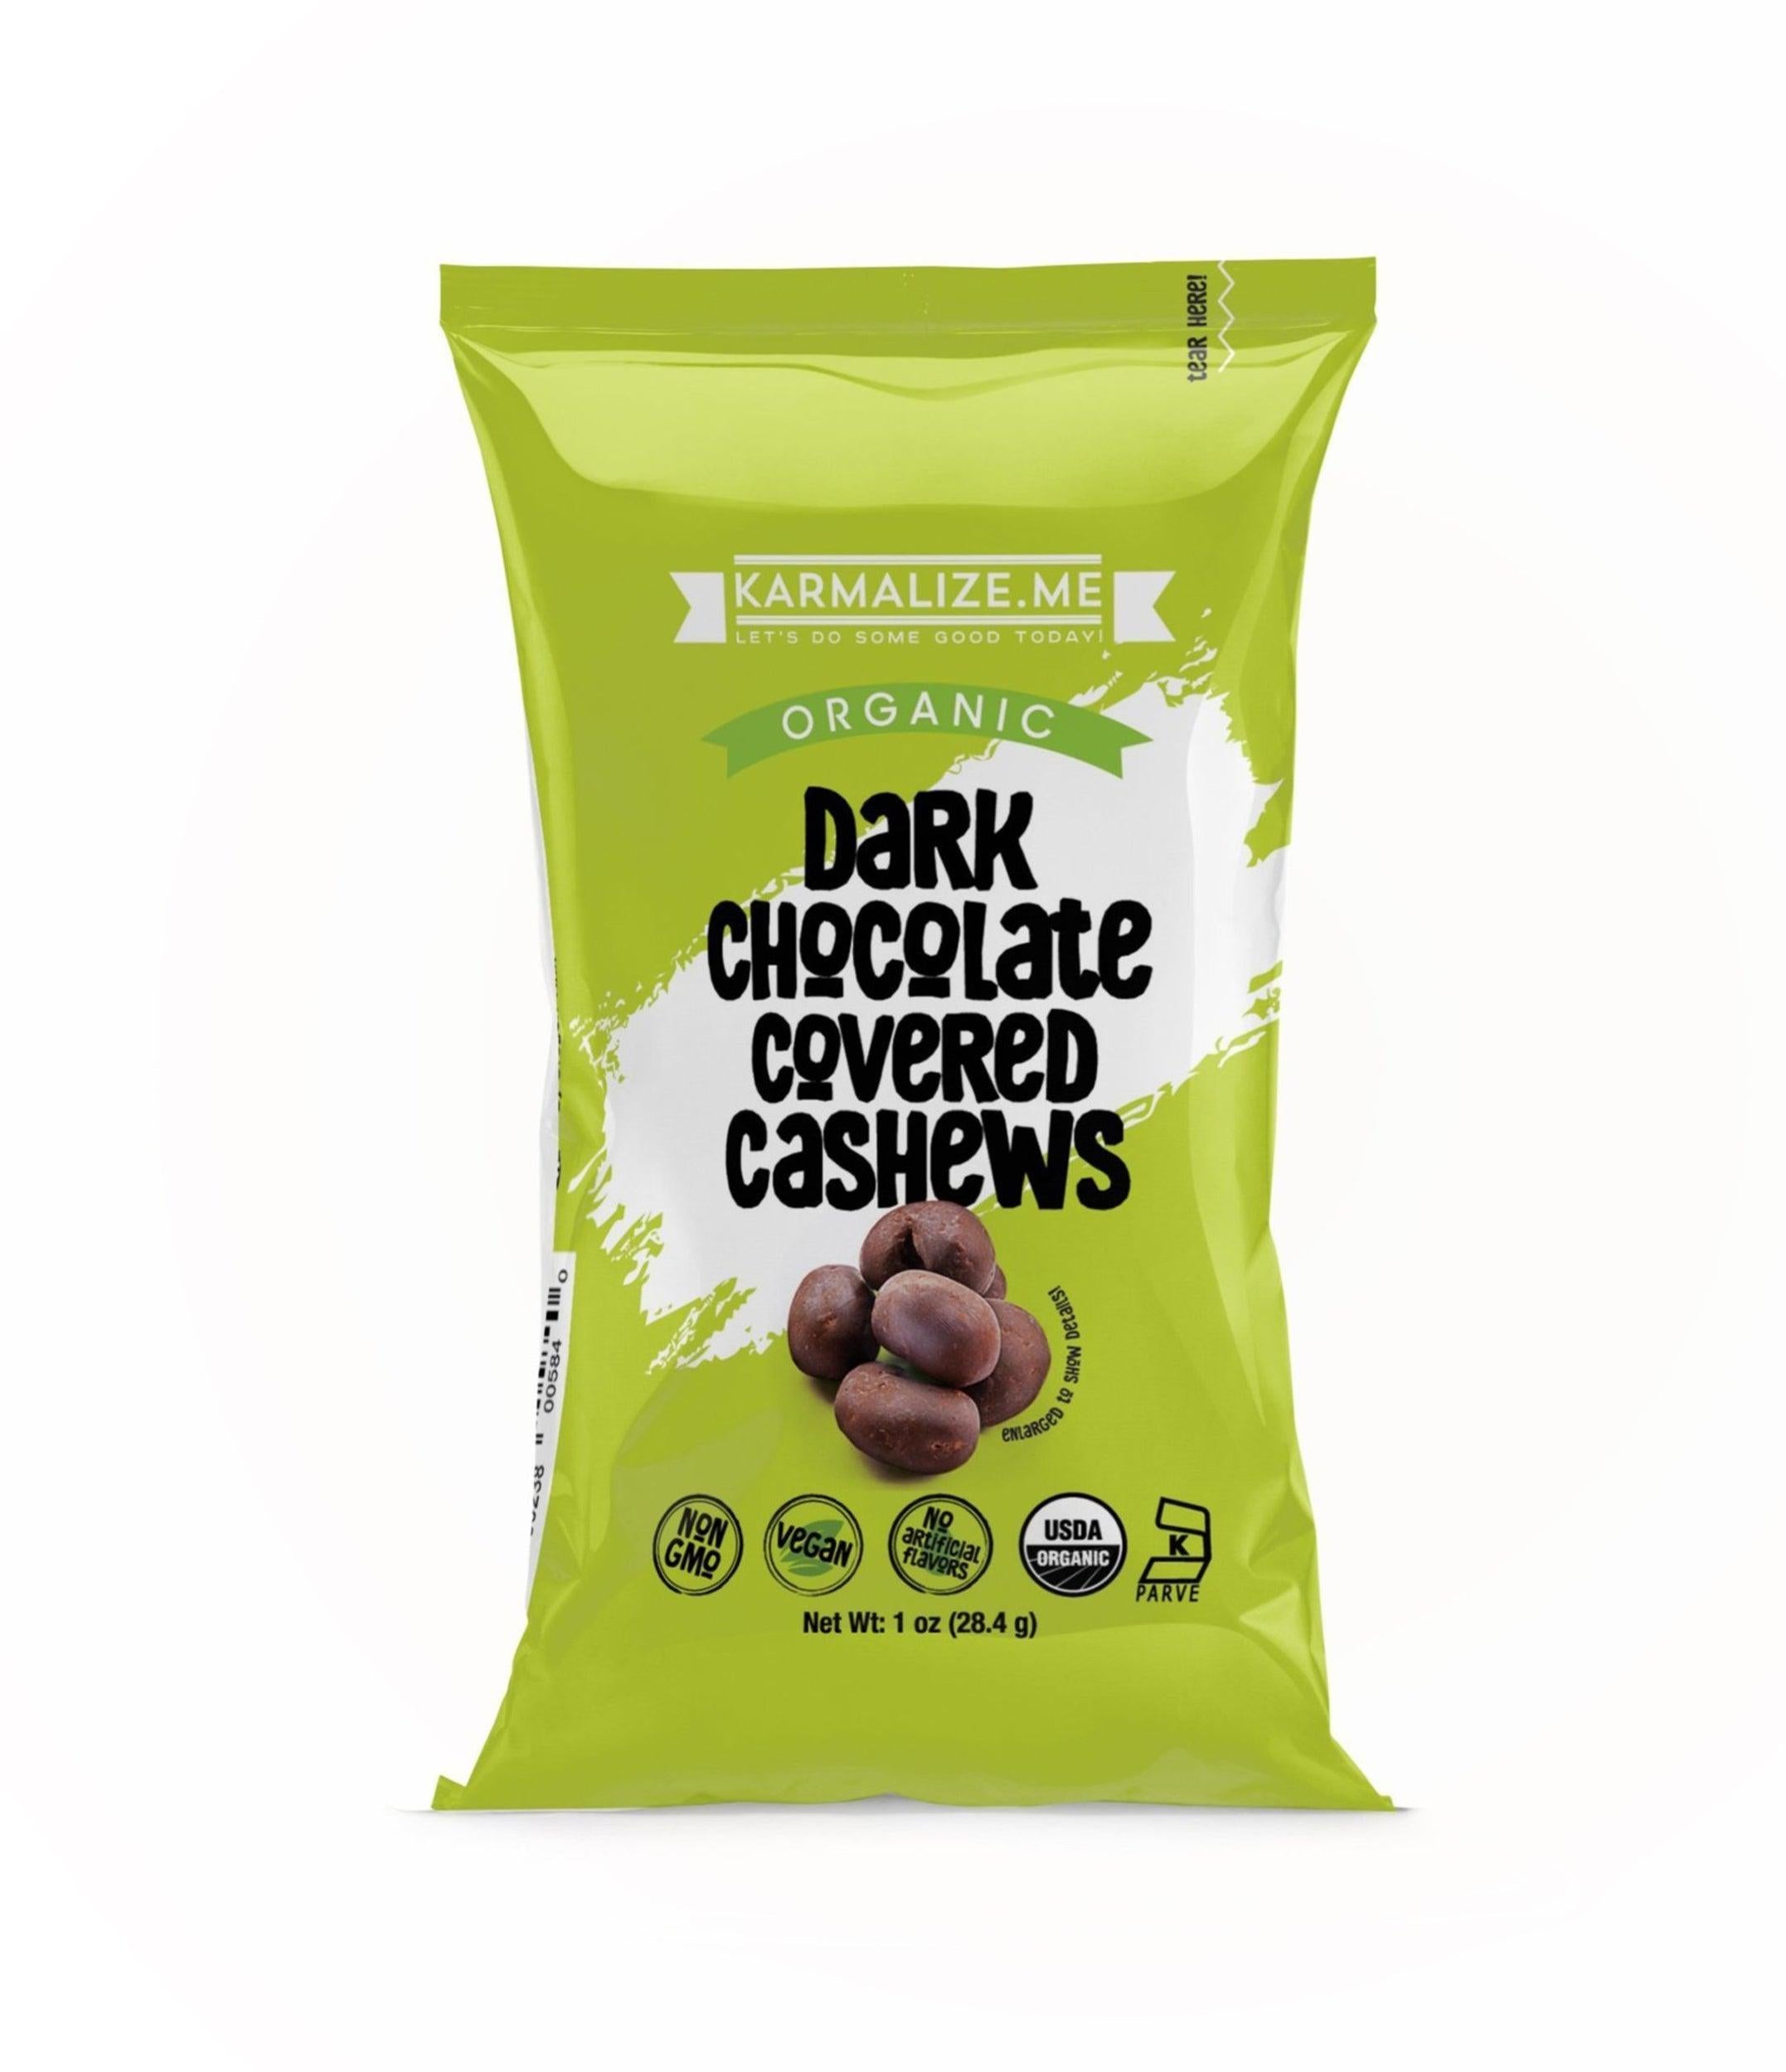 1 oz. Organic Vegan Dark Chocolate Covered Cashews - Pack of 6.